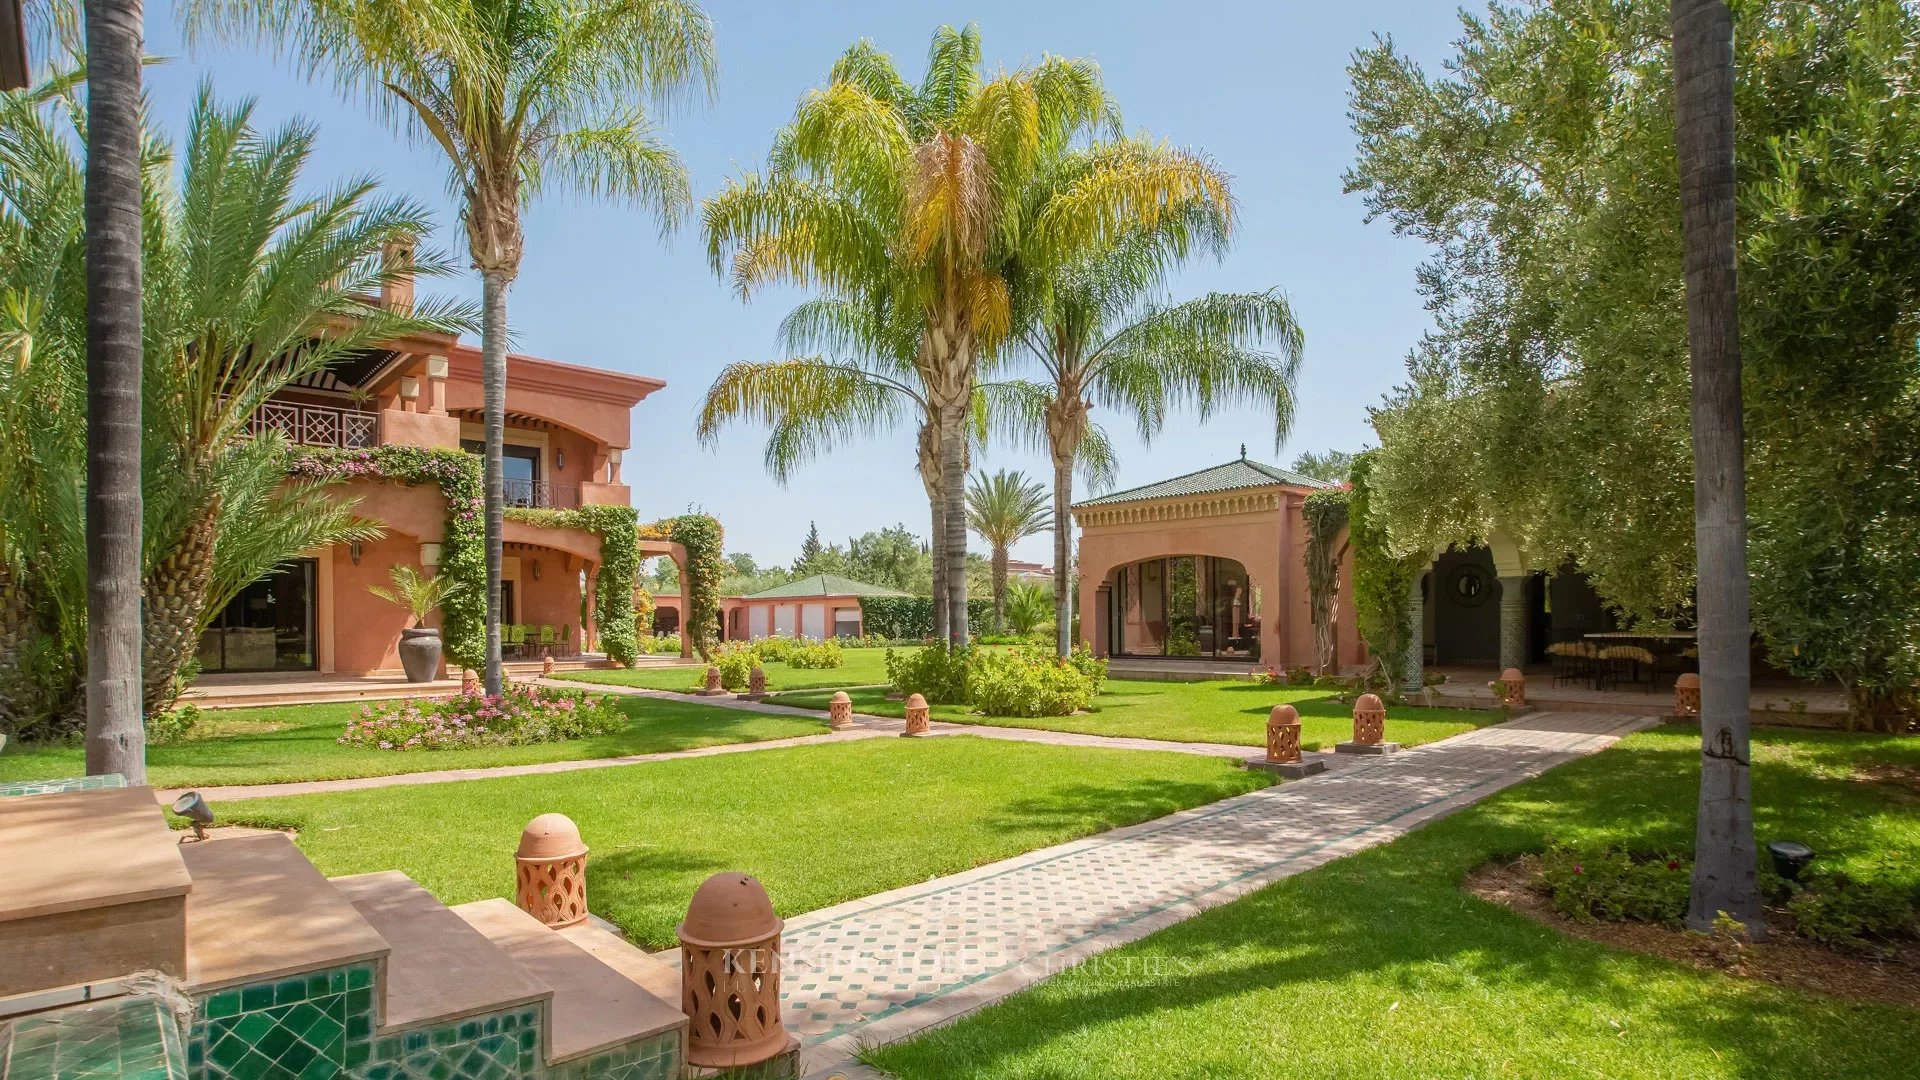 Villa Fati in Marrakech, Morocco